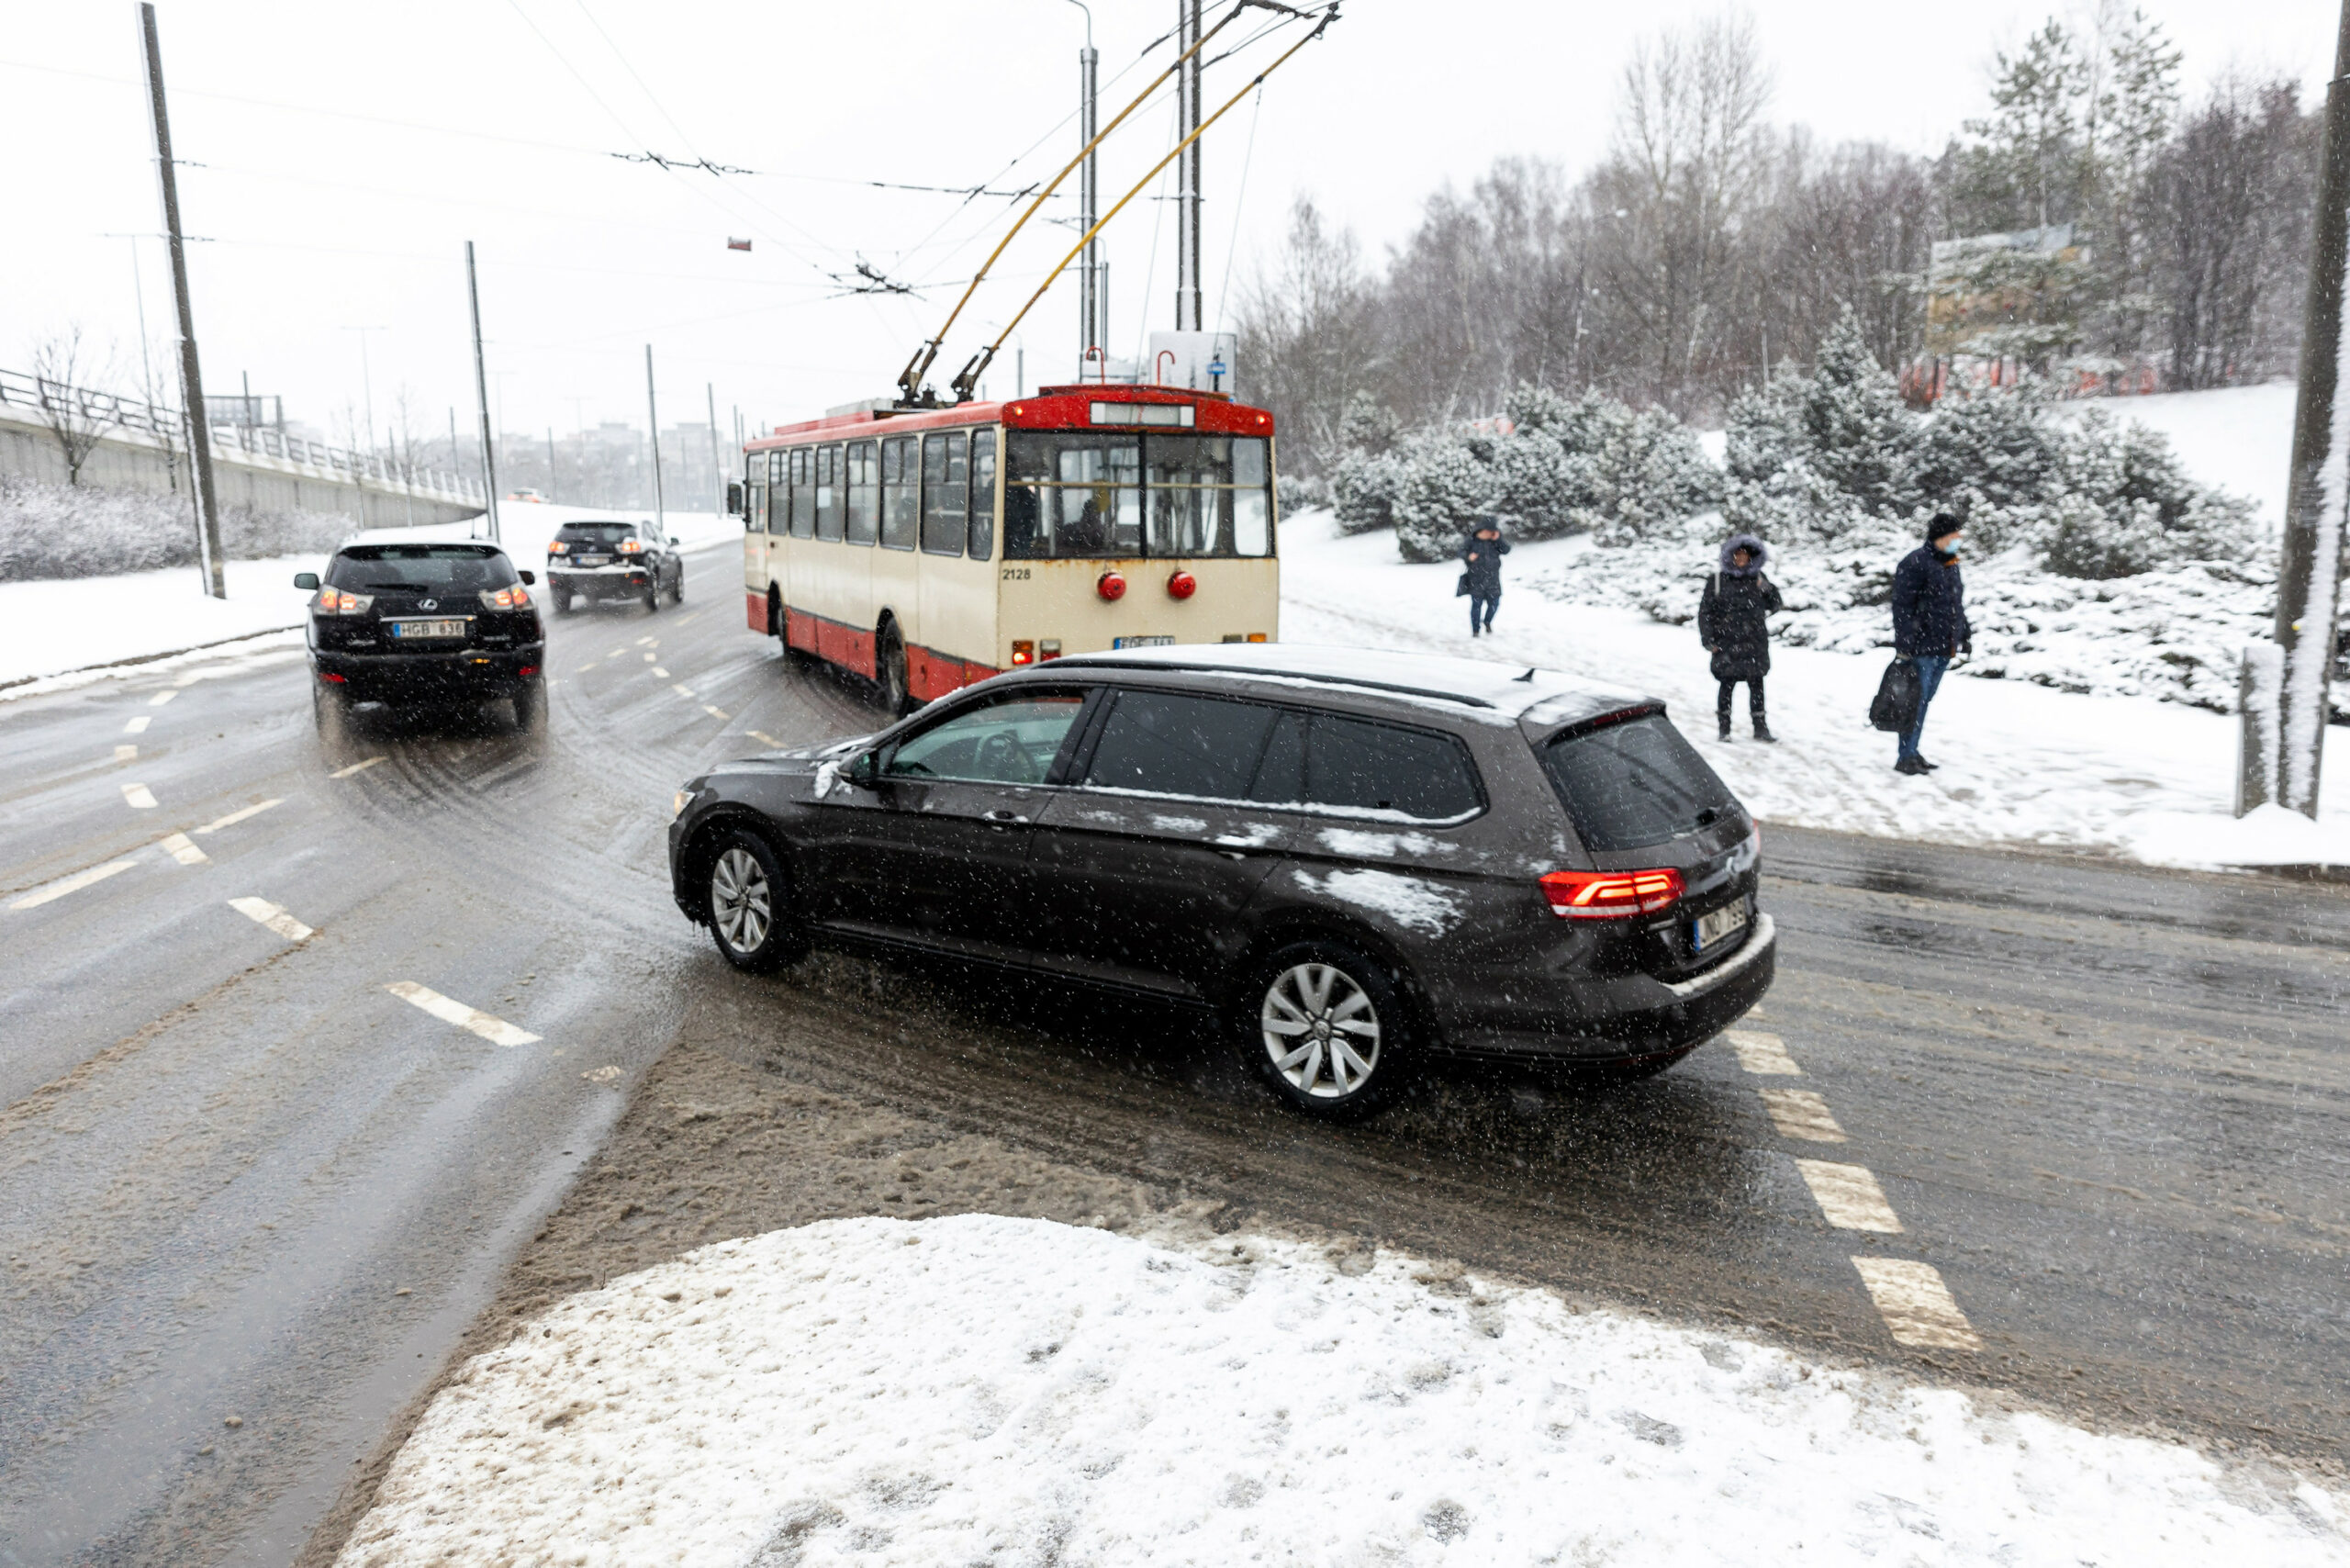 Условия дорожного движения в Вильнюсе ухудшились из-за выпавшего снега. Вильнюс, 2022 г. 20 января (Жигимантас Гедвила/BNS).